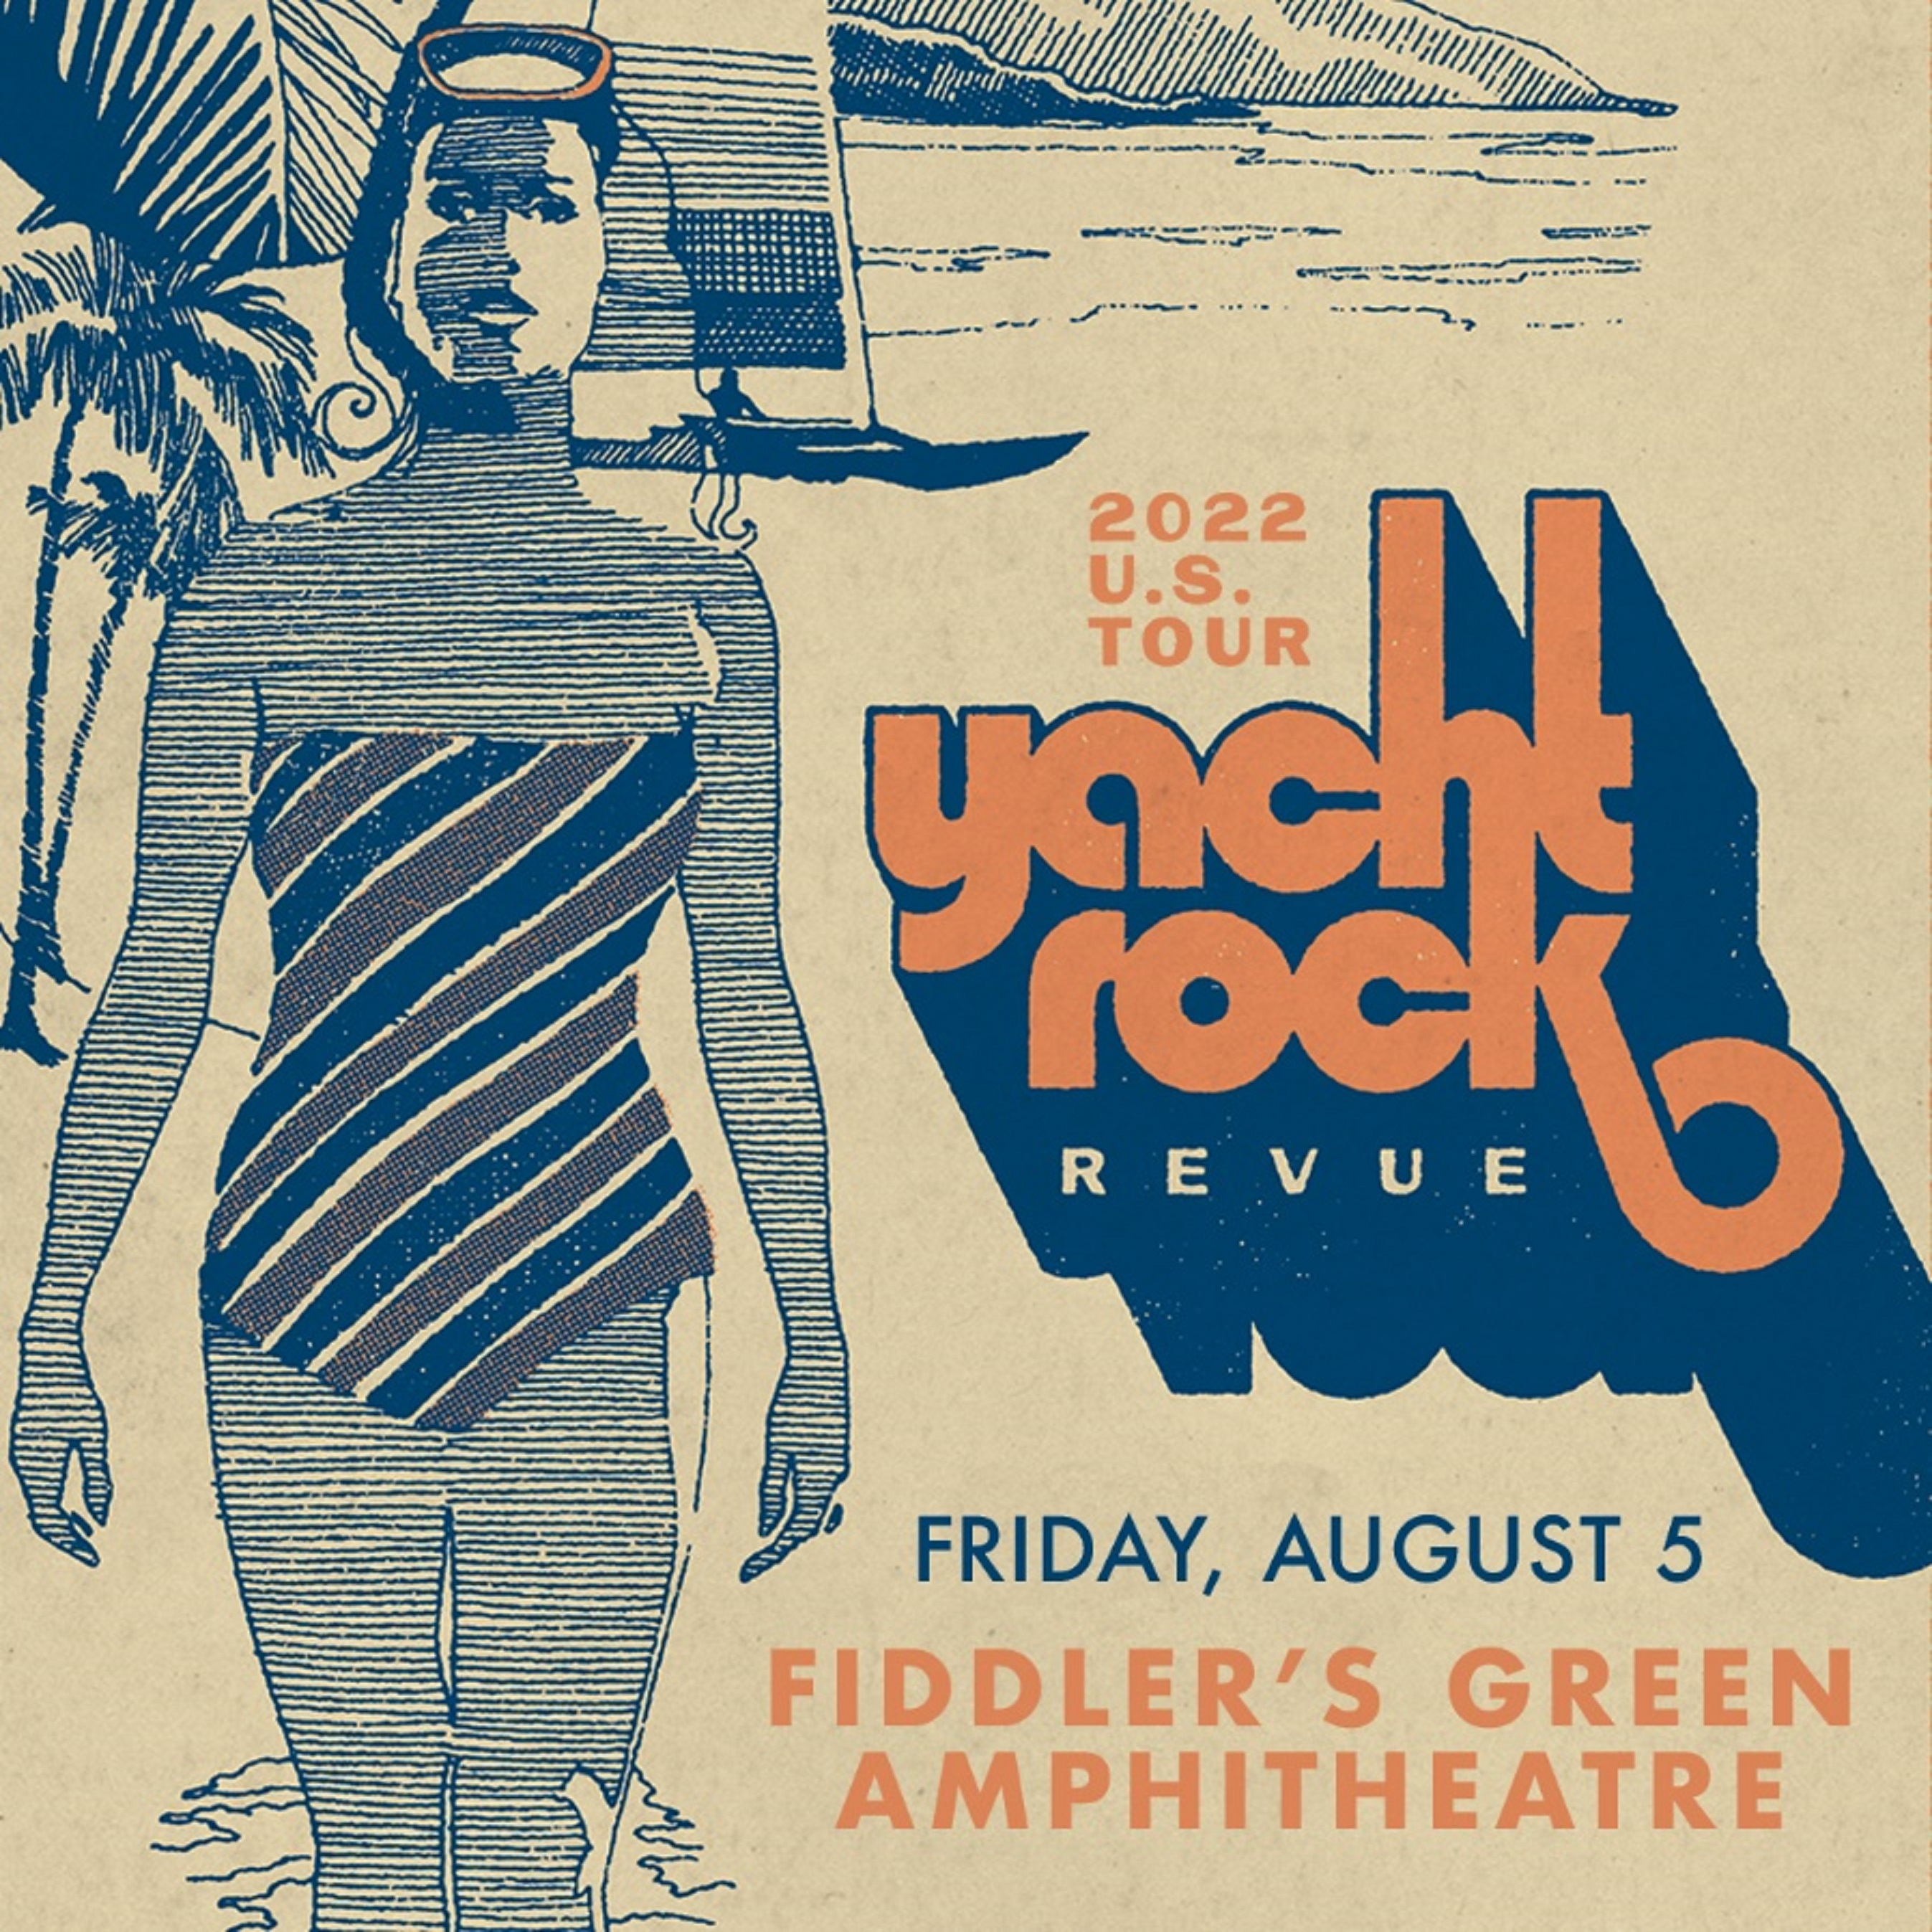 yacht rock revue tour 2023 setlist